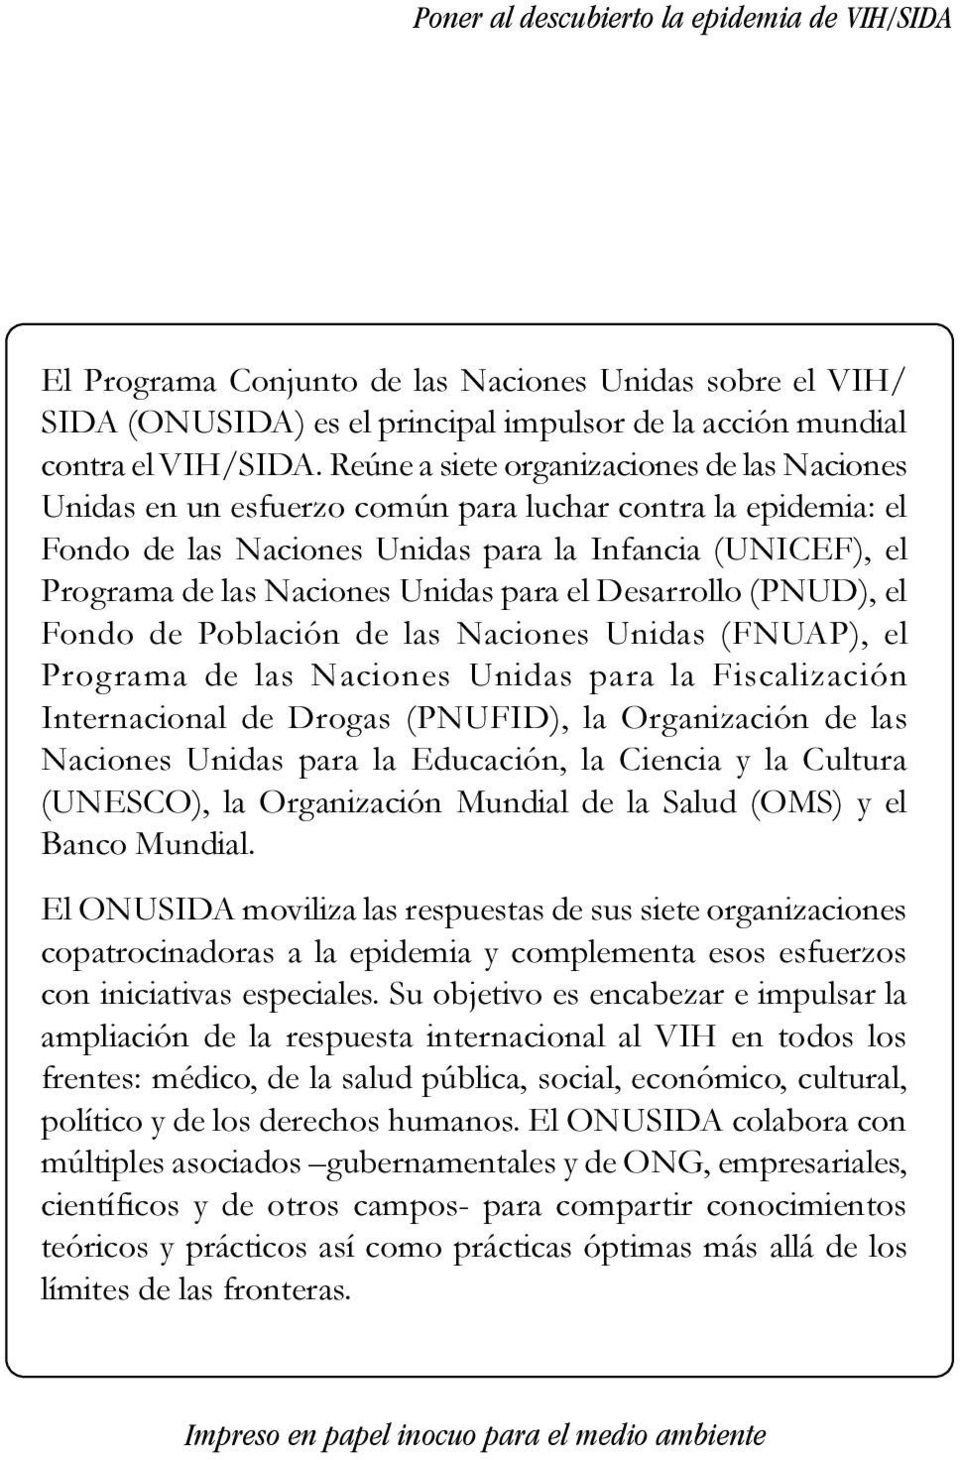 para el Desarrollo (PNUD), el Fondo de Población de las Naciones Unidas (FNUAP), el Programa de las Naciones Unidas para la Fiscalización Internacional de Drogas (PNUFID), la Organización de las